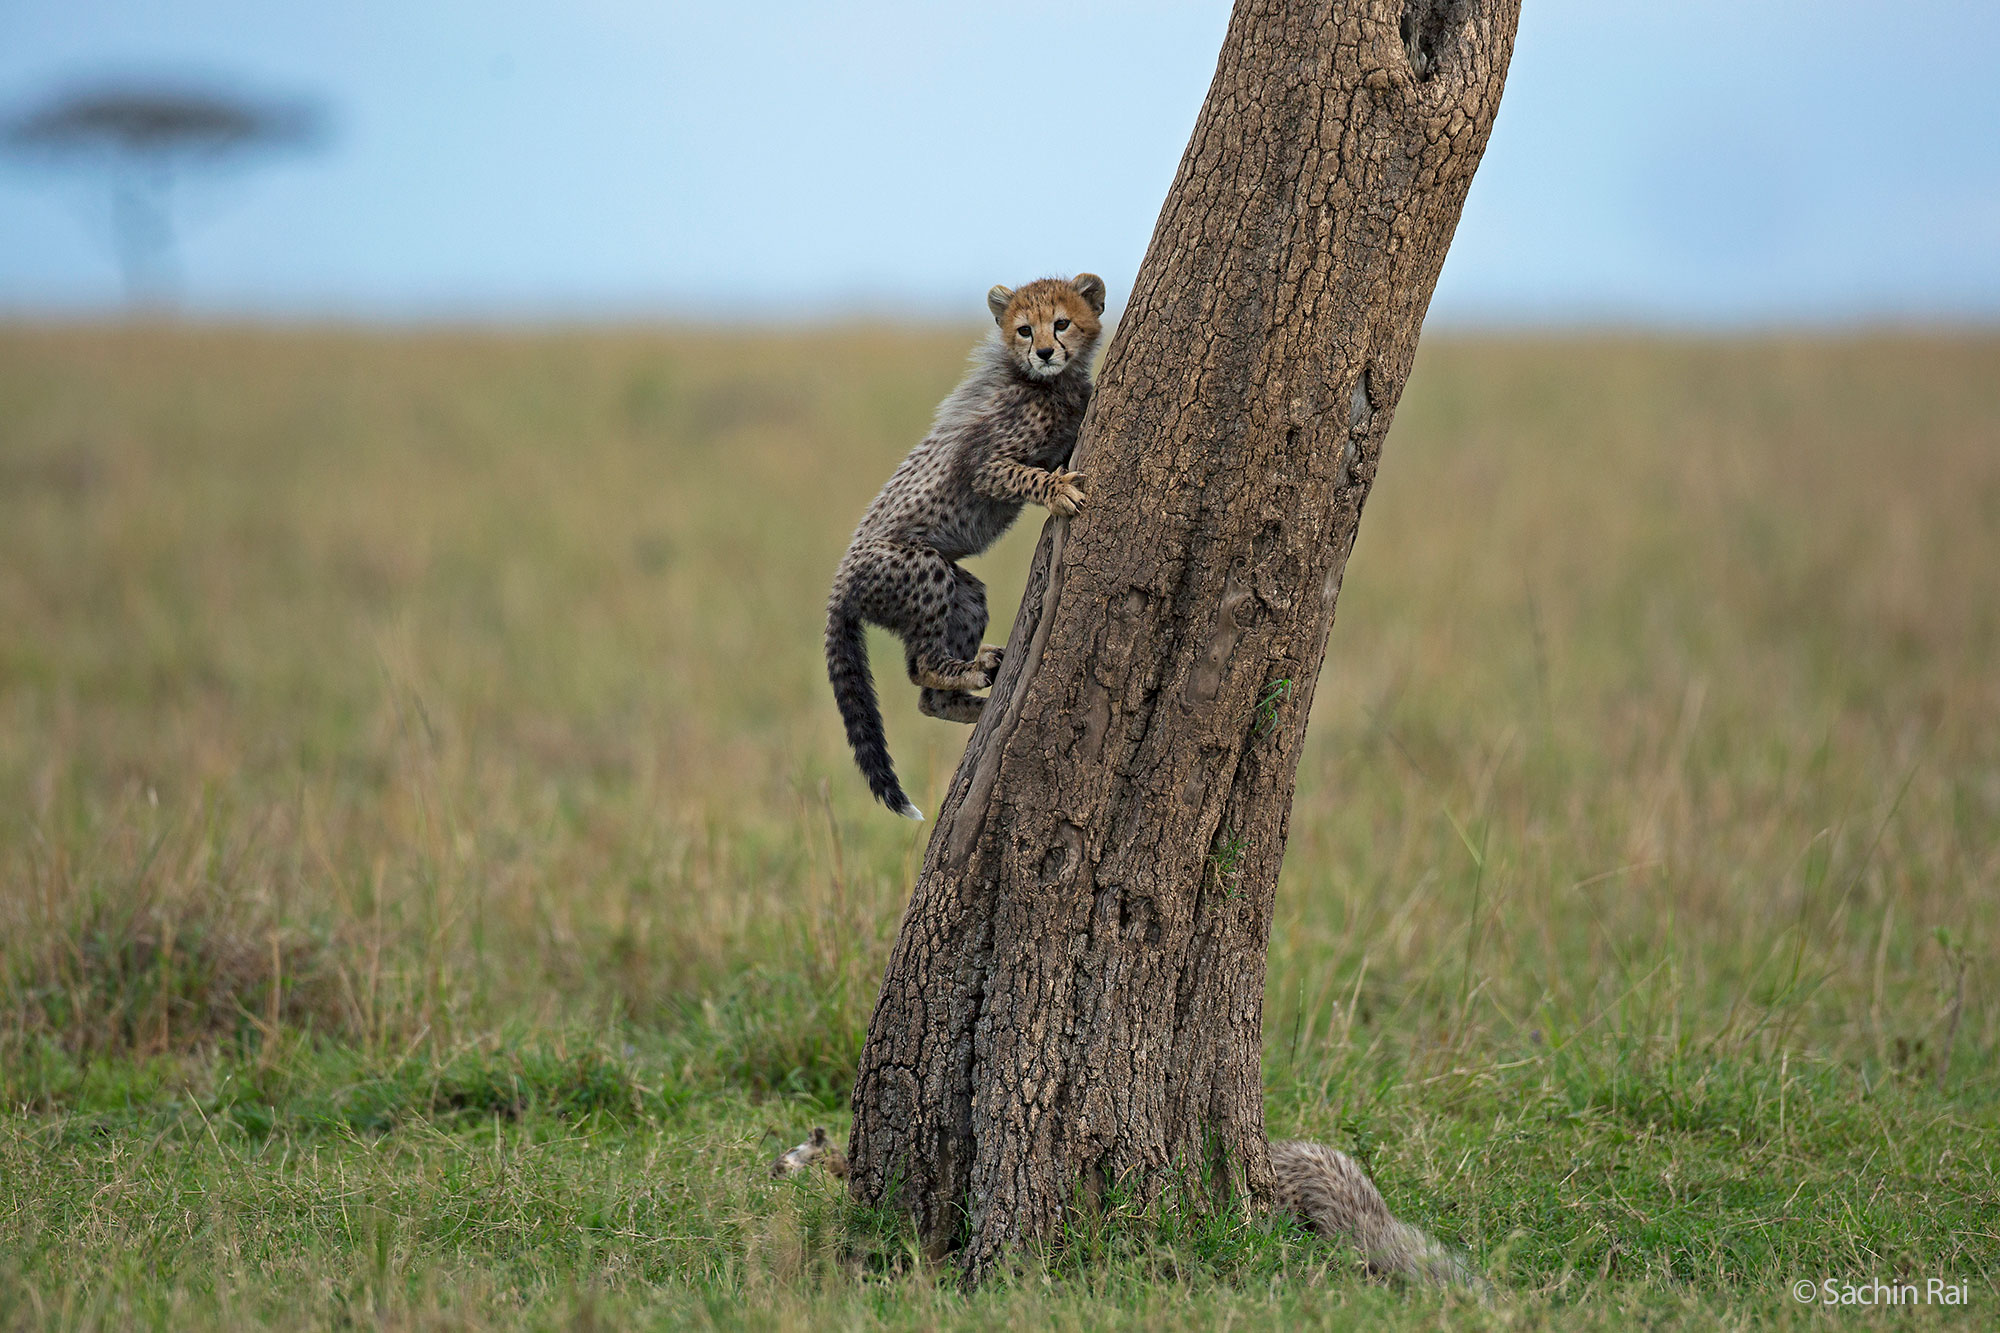 Cheetah cub, © Sachin Rai